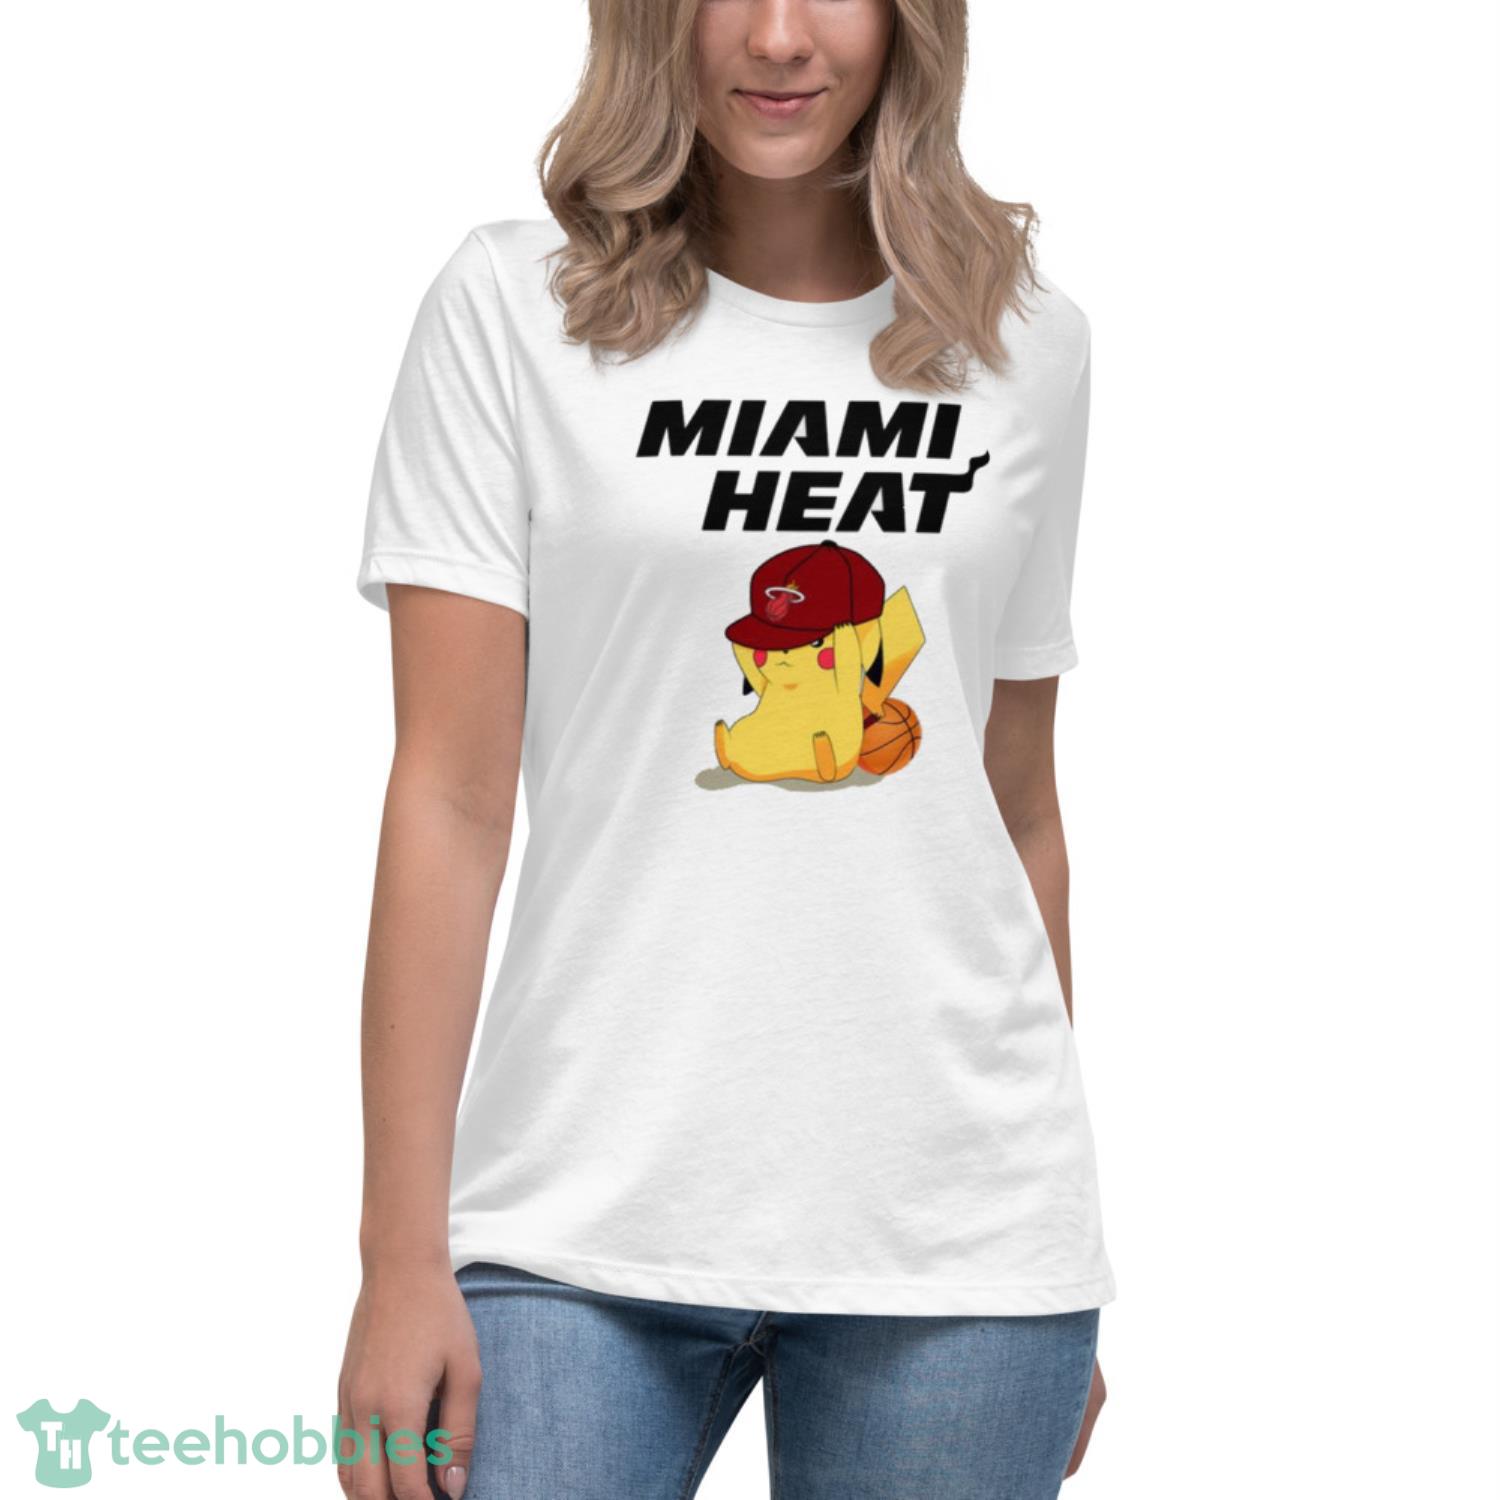 NBA Pikachu Basketball Sports Miami Heat T Shirt Product Photo 5